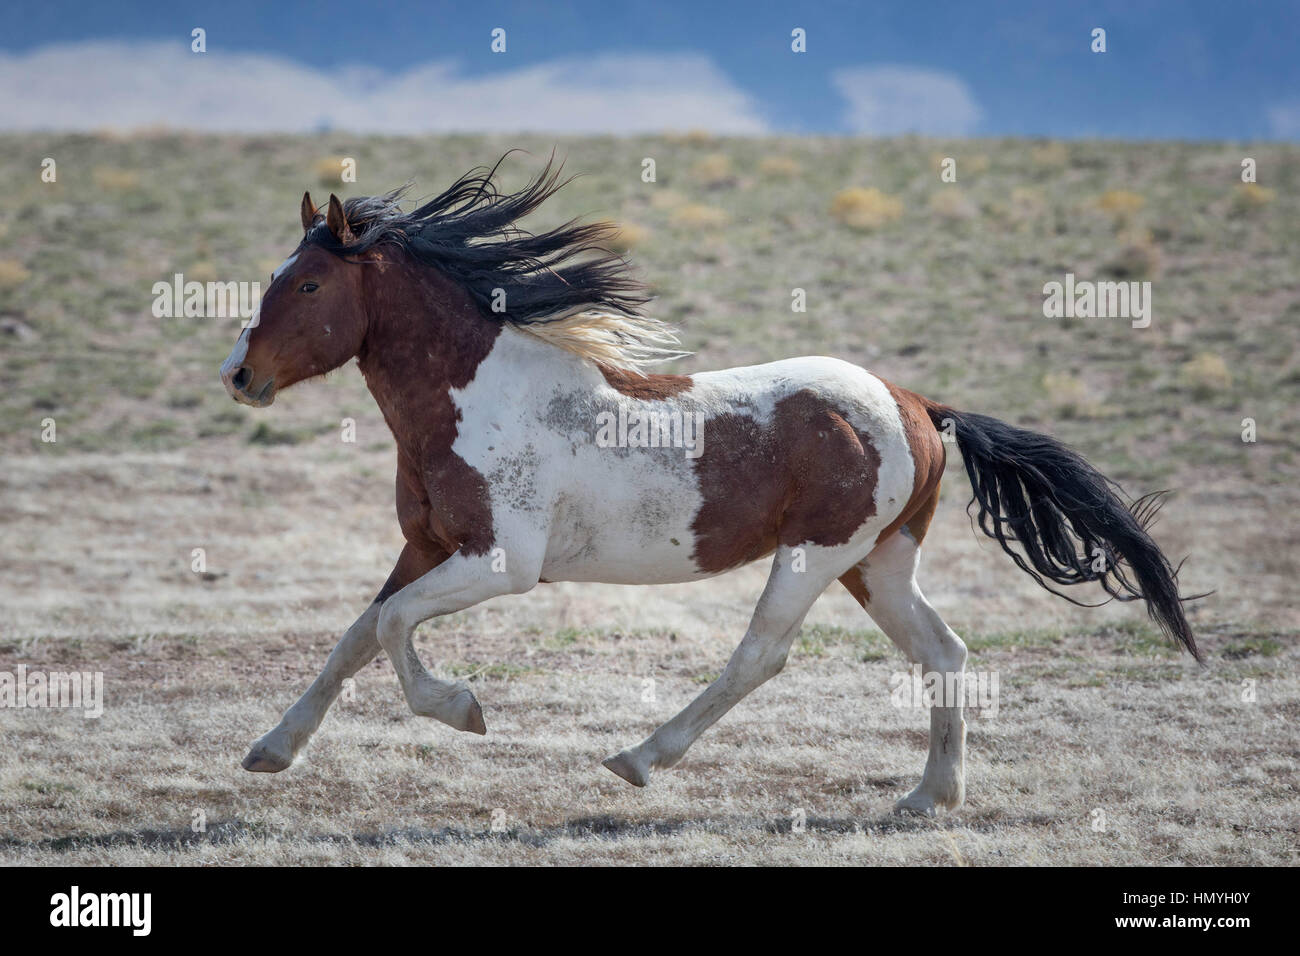 Brun et Blanc Stock galopante Cheval (Equus ferus caballus), de chevaux sauvages du désert de l'Ouest, Utah, USA, Amérique du Nord Banque D'Images